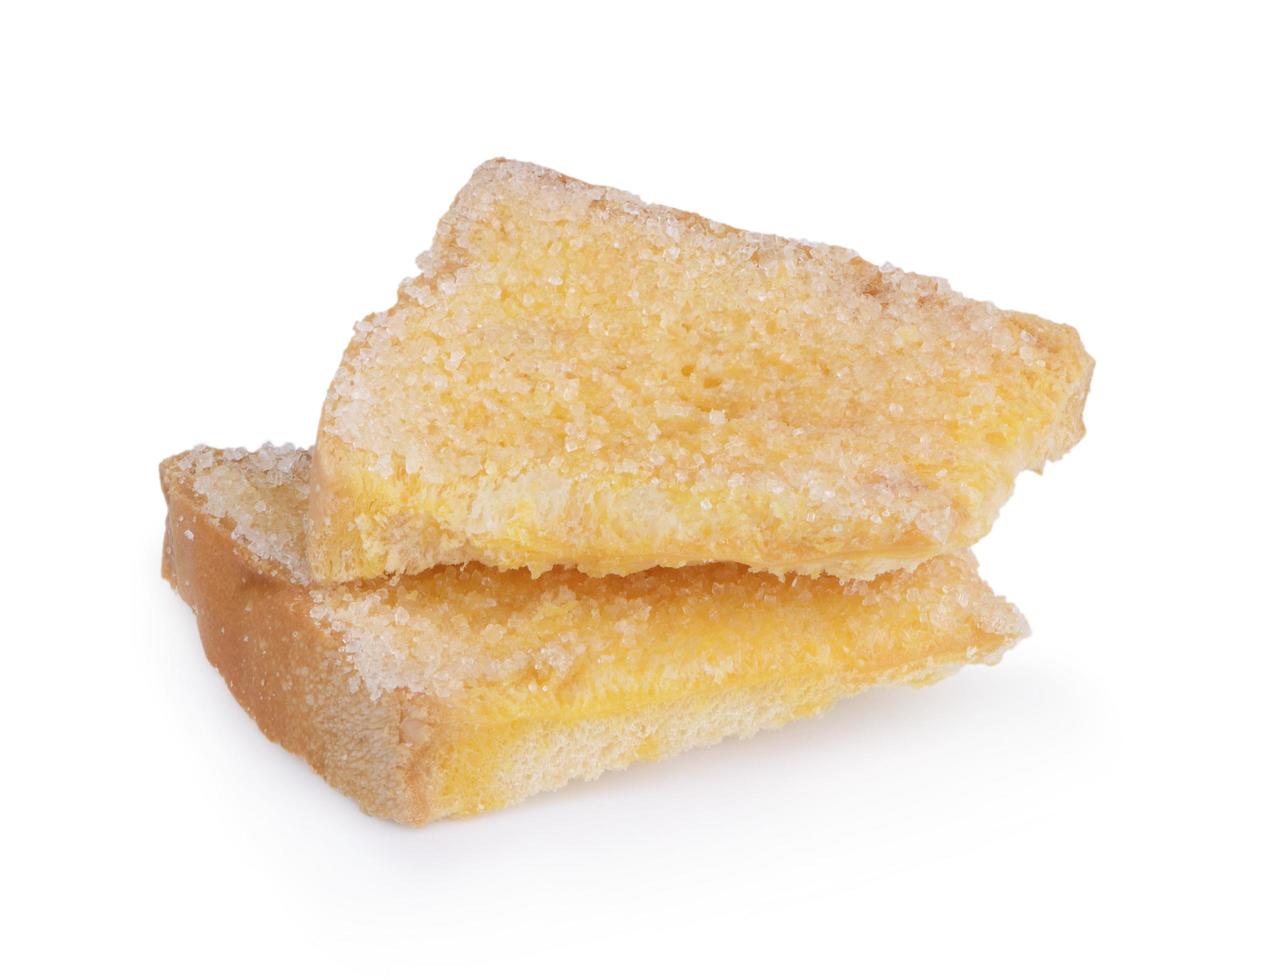 koekjes met boter en suiker geïsoleerd op een witte achtergrond foto